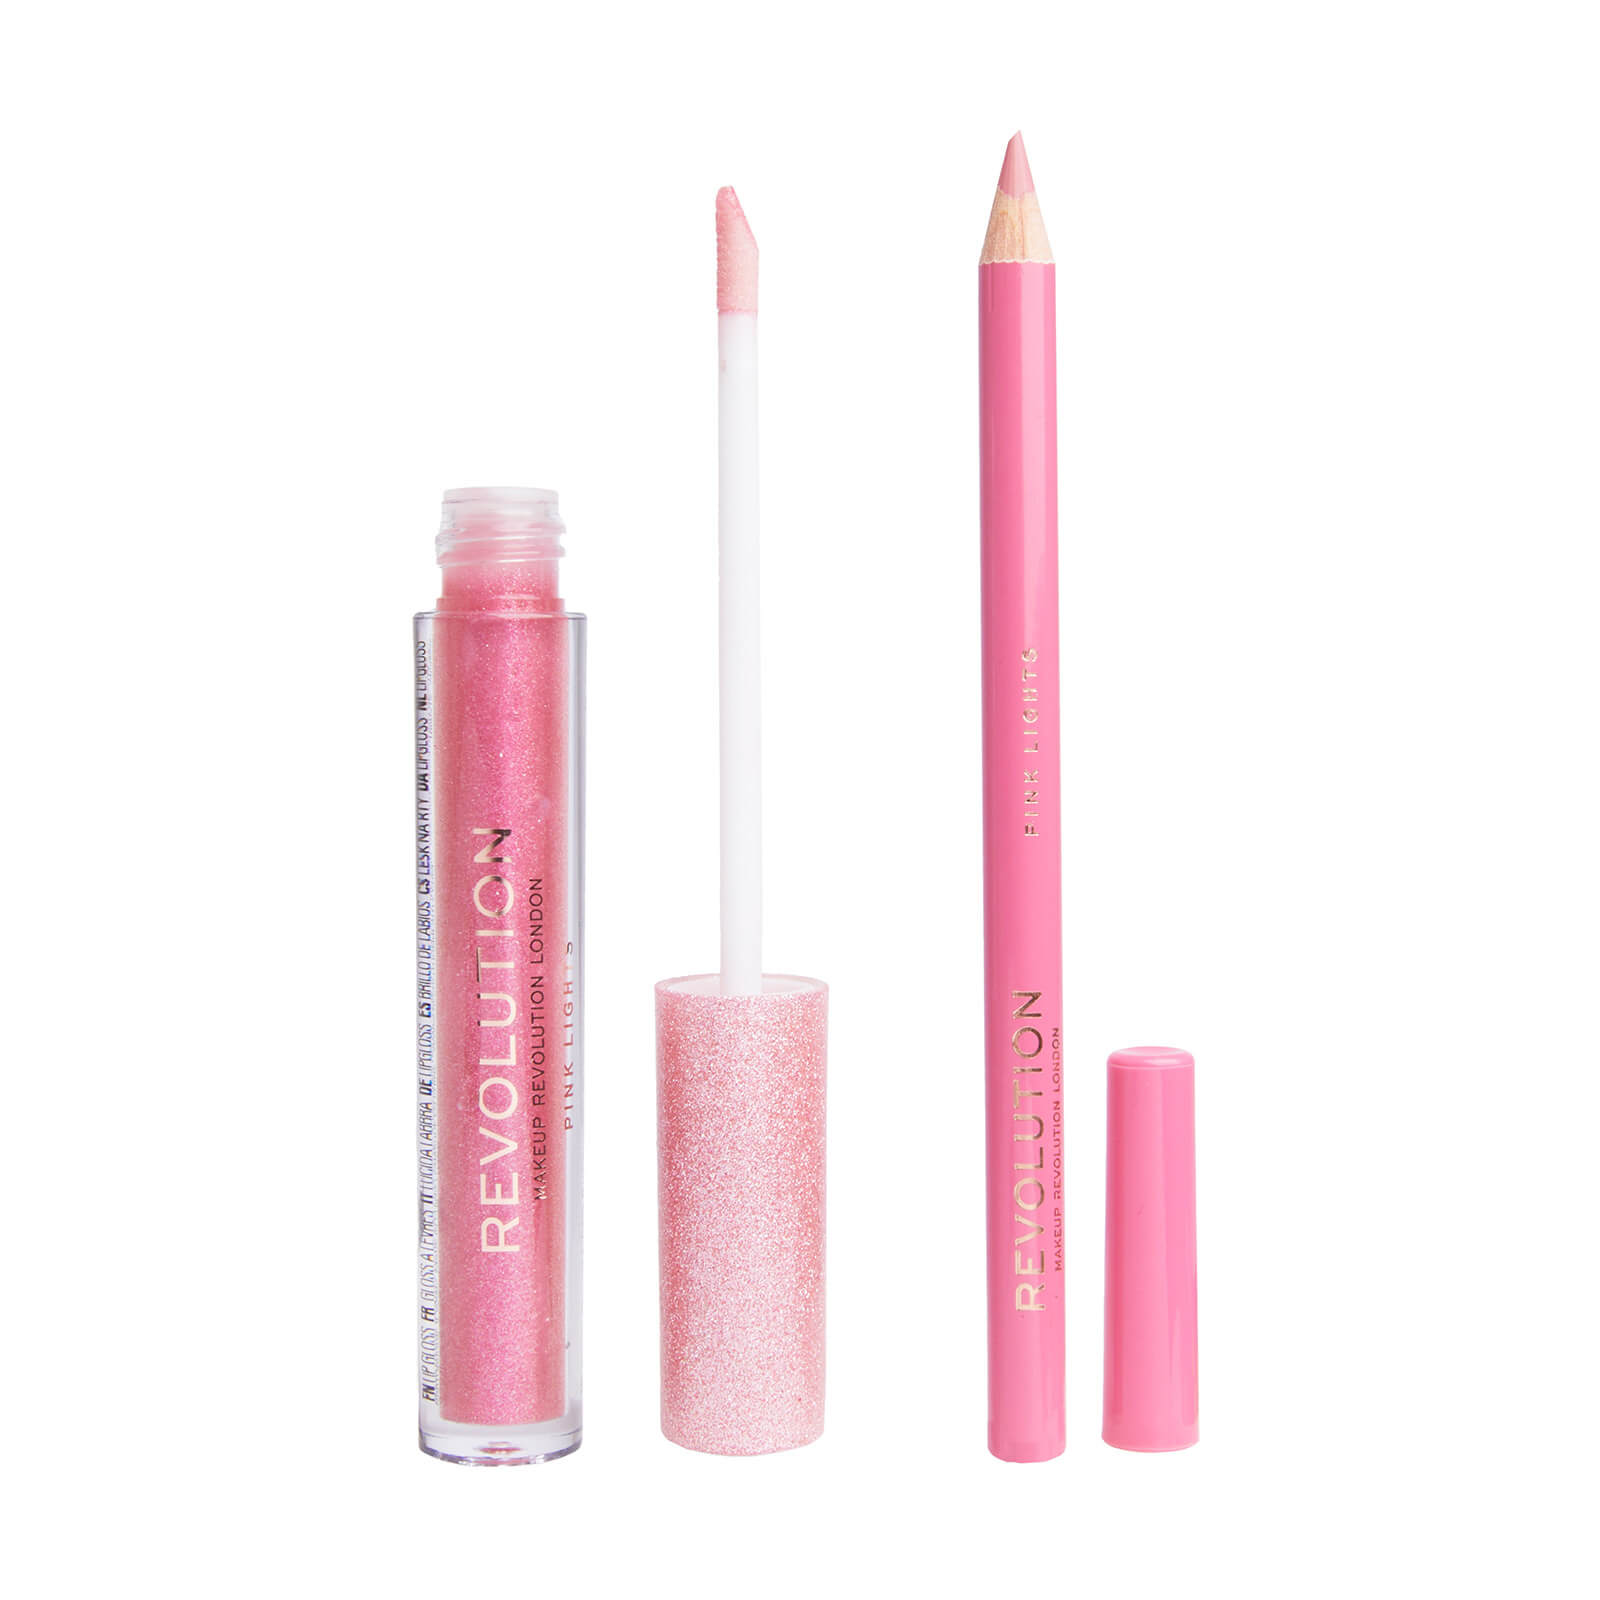 Makeup Revolution Ultimate Lights Shimmer Lip Kit (Various Shades) - Pink Lights